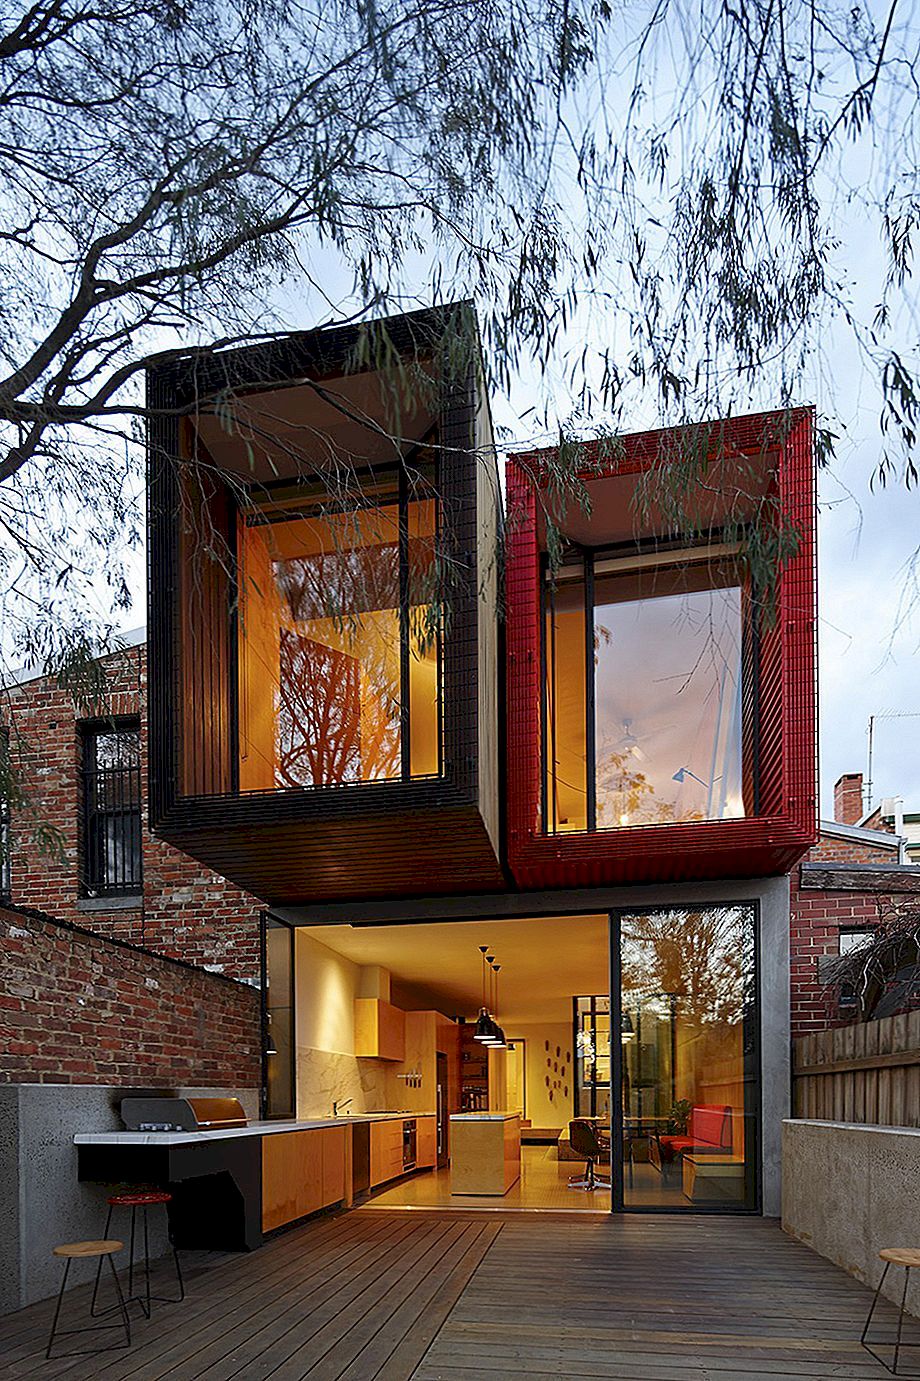 Το σπίτι με ένα ιαπωνικό Maple Tree στη Μελβούρνη από τον Andrew Maynard